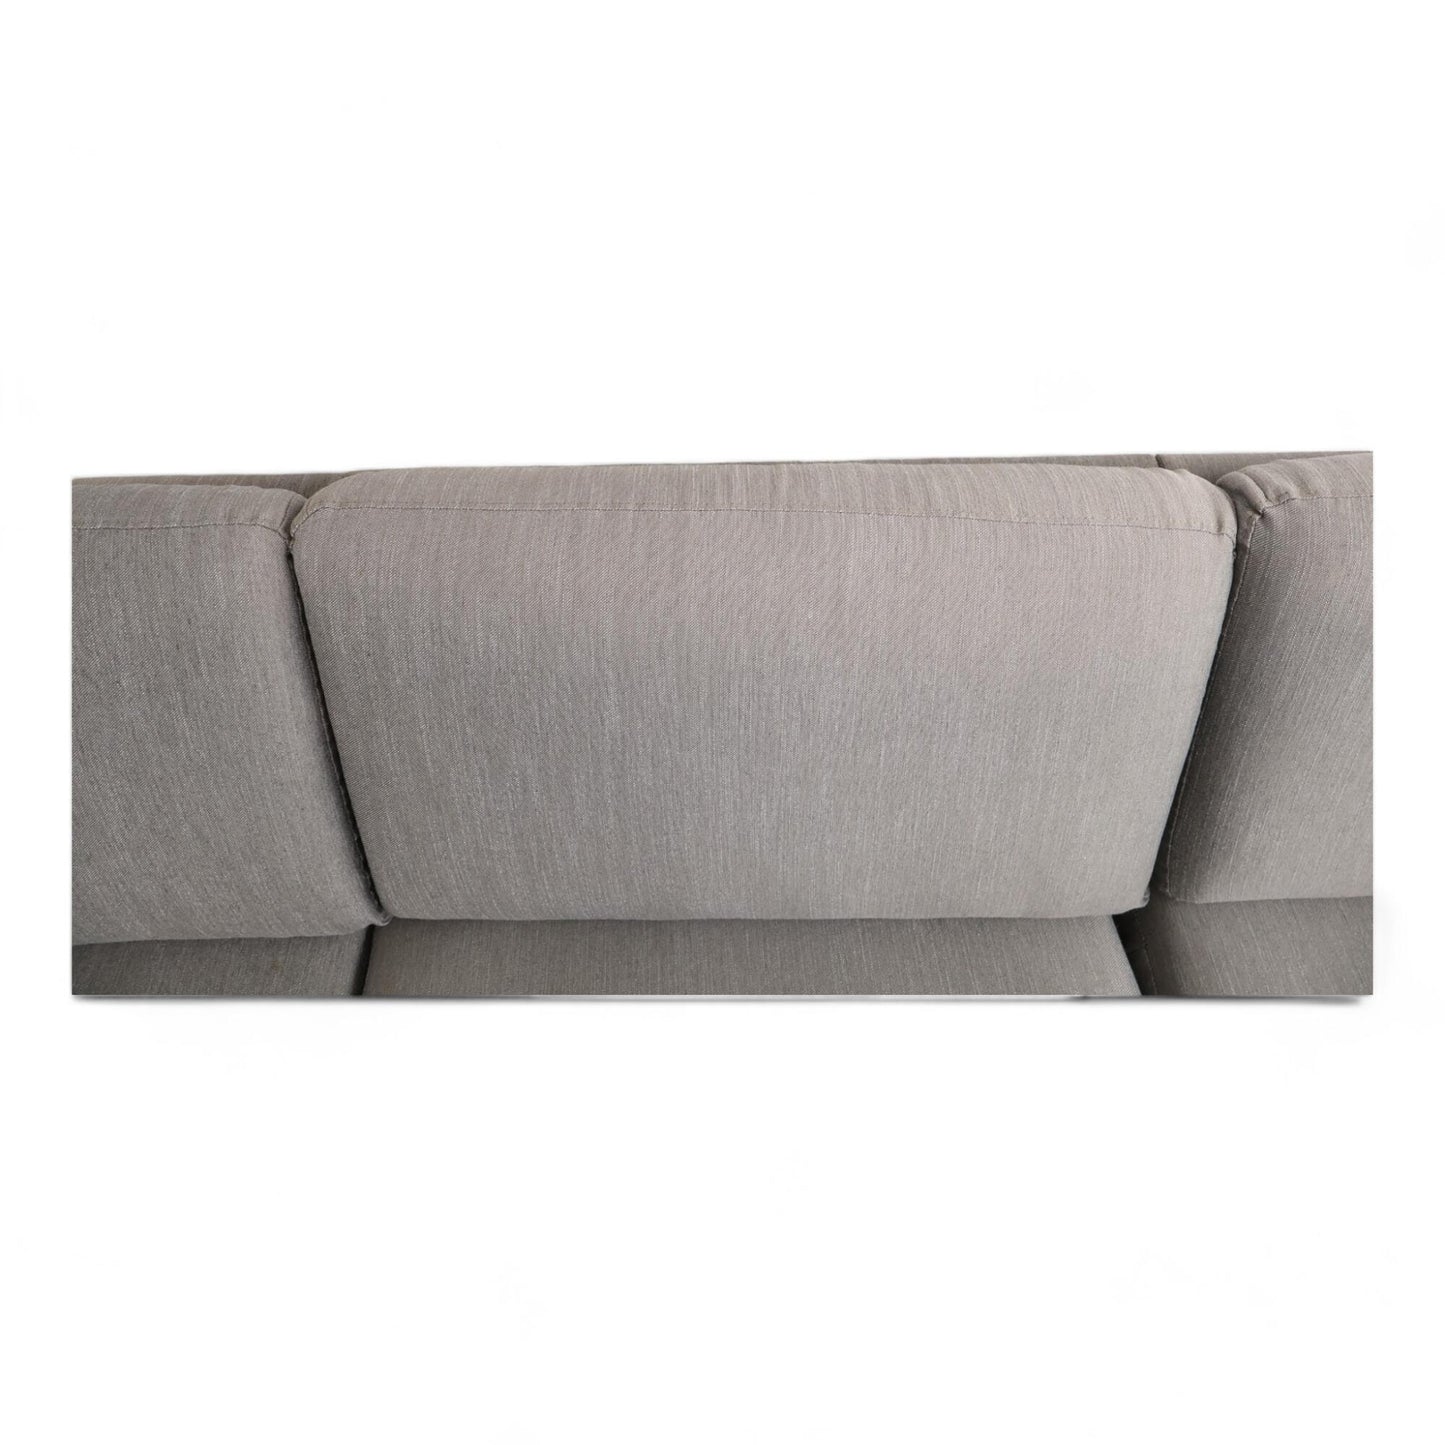 Nyrenset | Grå Formfin sofa med sjeselong